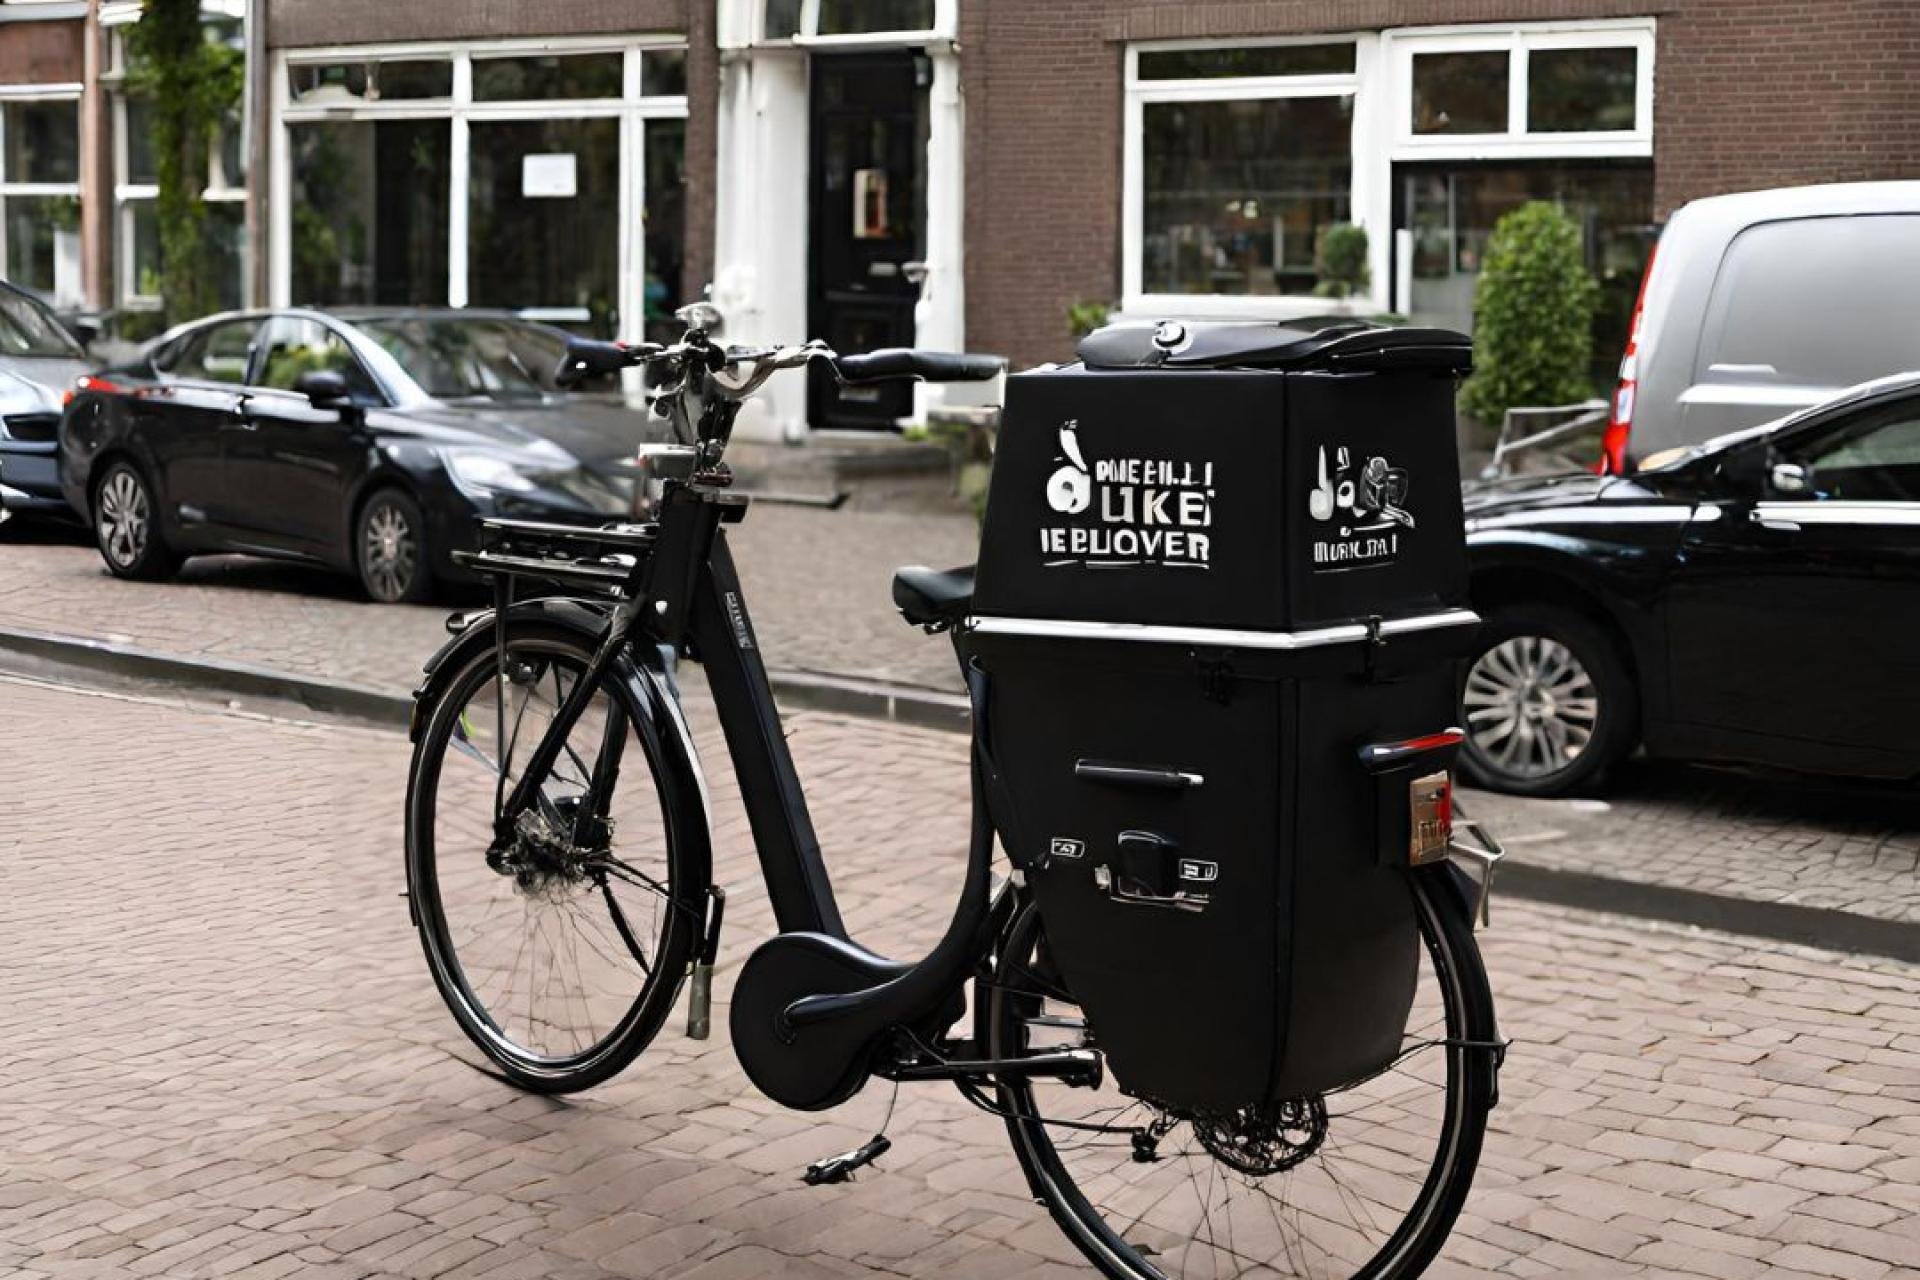 Zwarte fiets met achterop een kist waar maaltijden in kunnen worden bezorgd. 